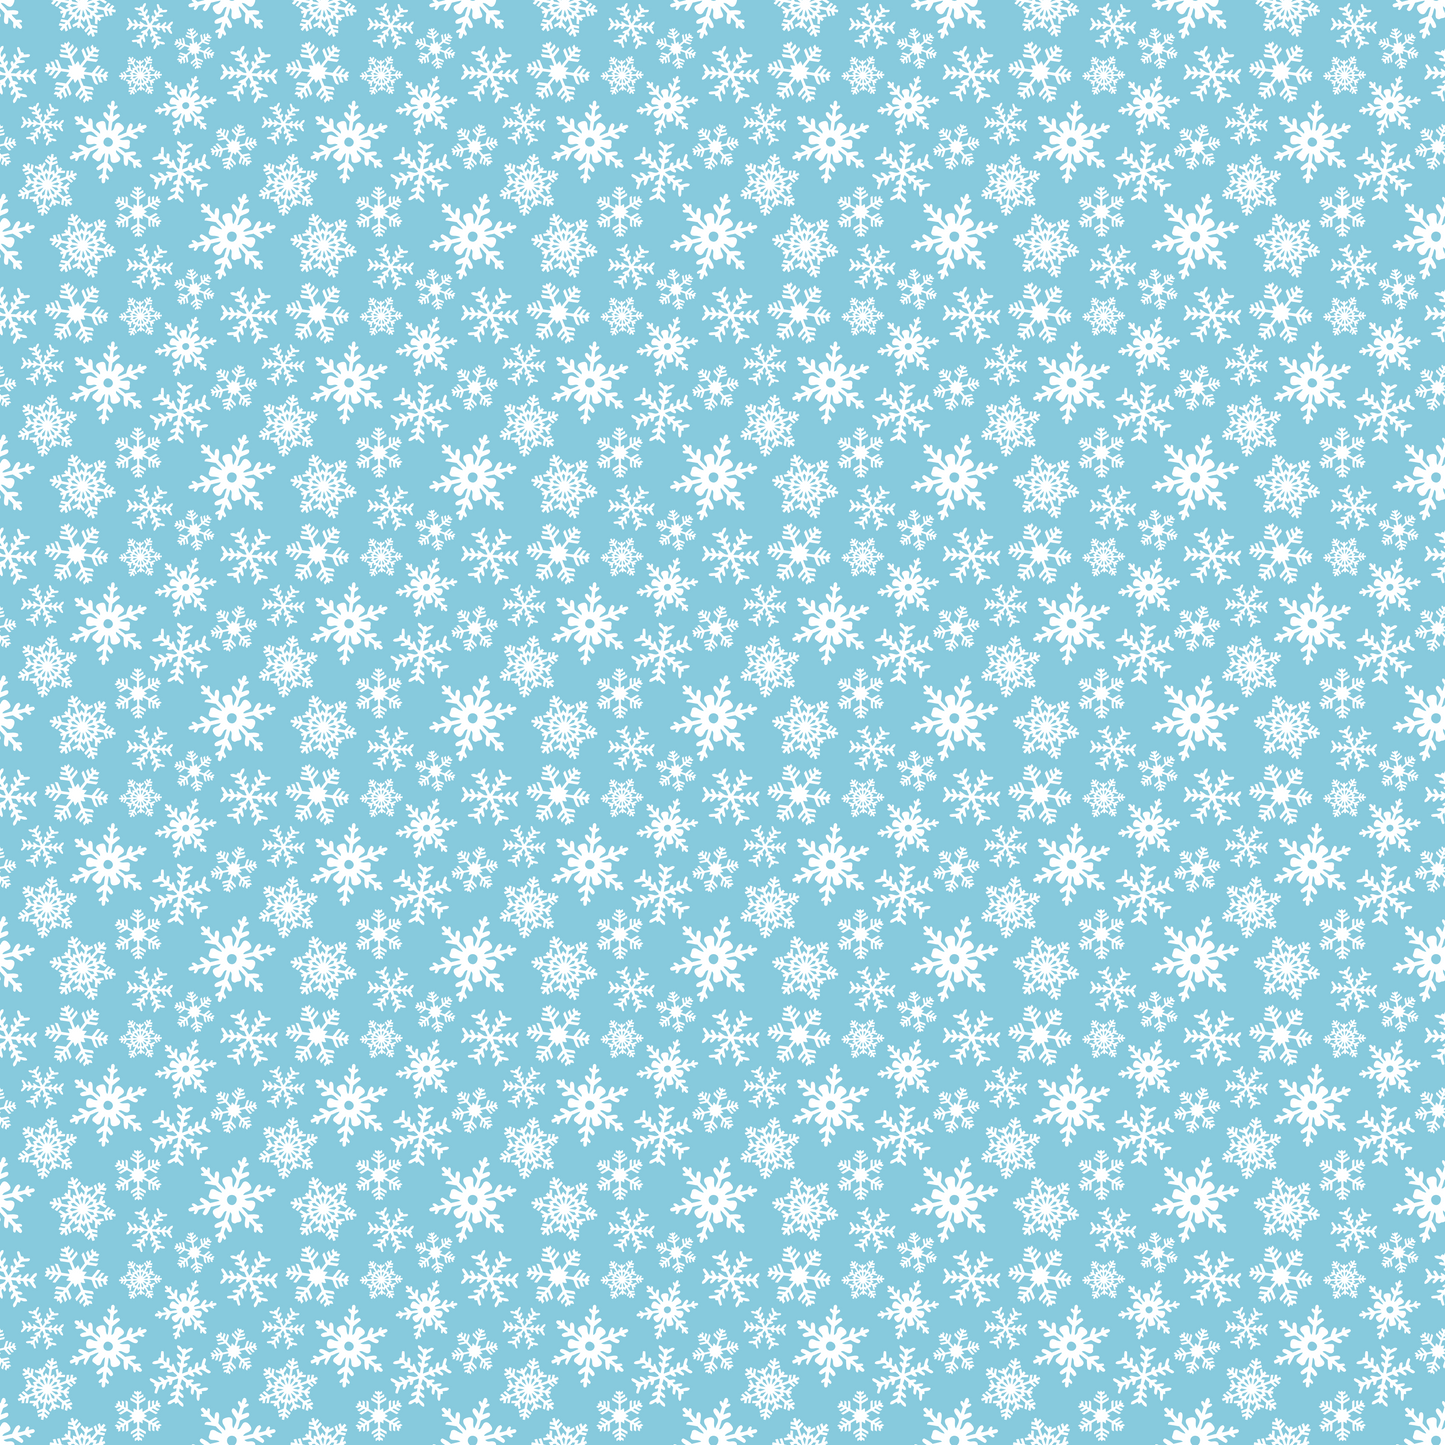 Winter Fun - White Snowflakes on Light Blue Background 011